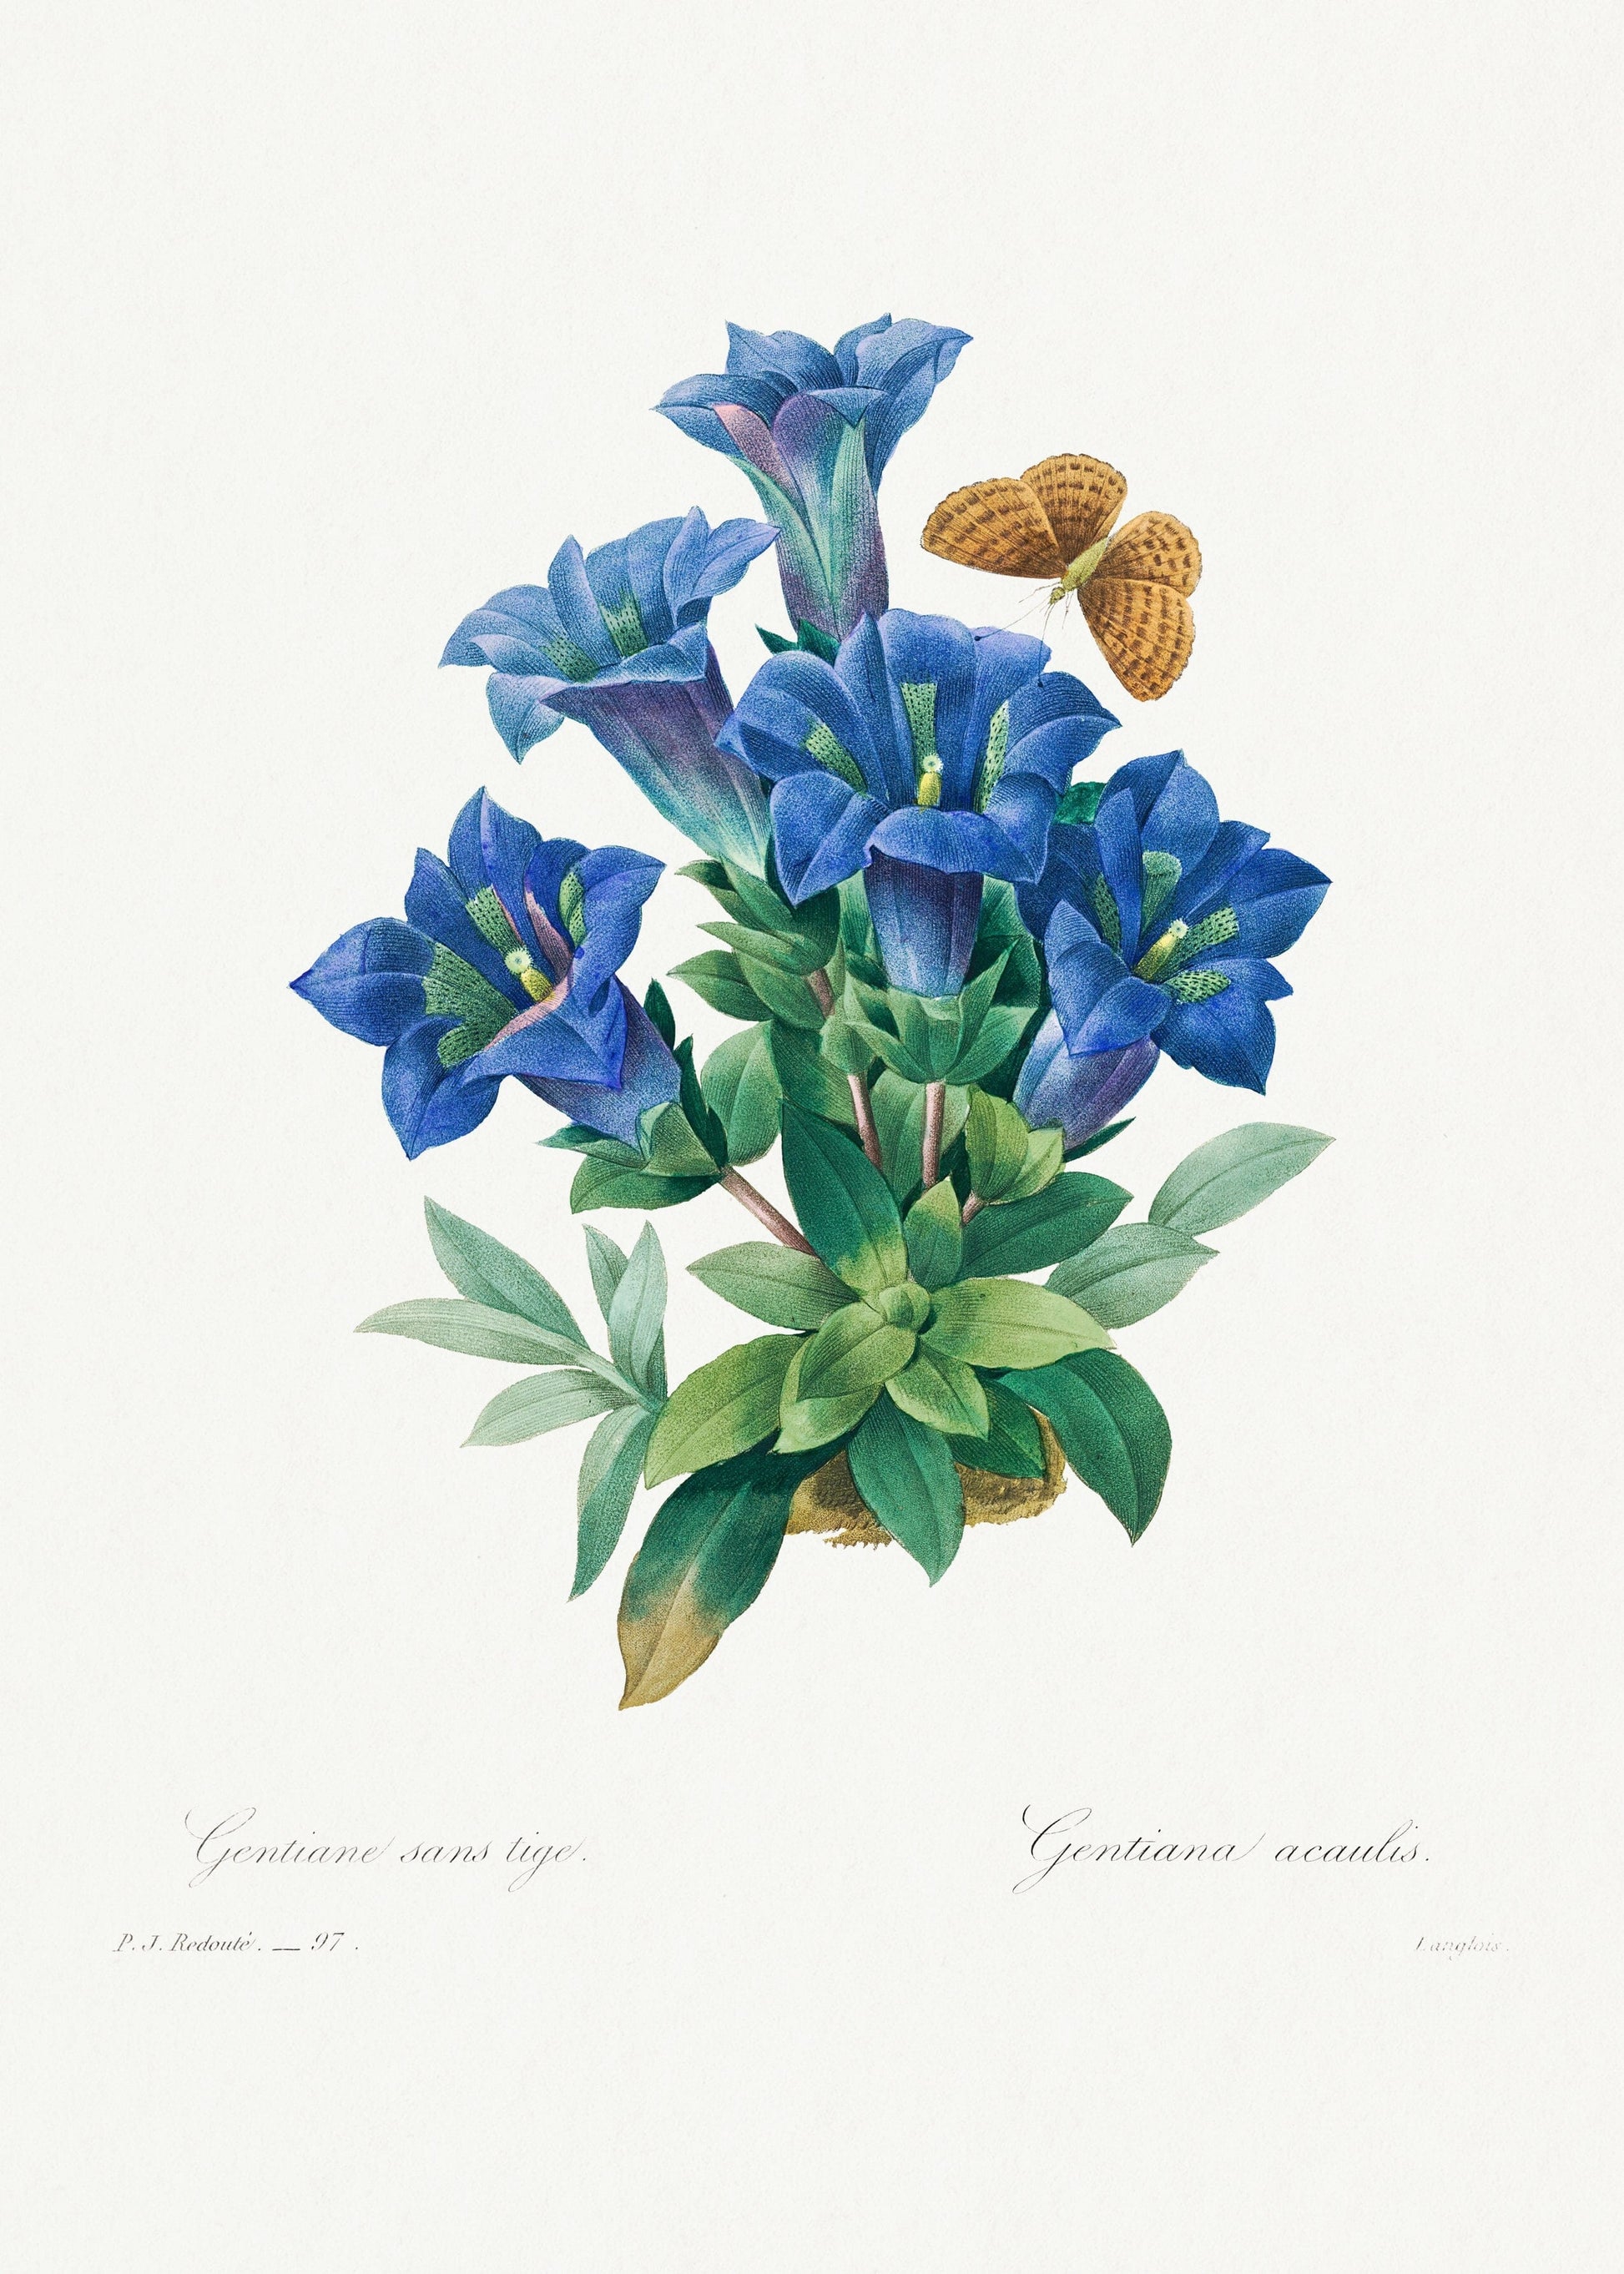 Gentiana Acaulis flower (1800s) | Botanical prints | Pierre-Joseph Redouté Posters, Prints, & Visual Artwork The Trumpet Shop Vintage Prints   